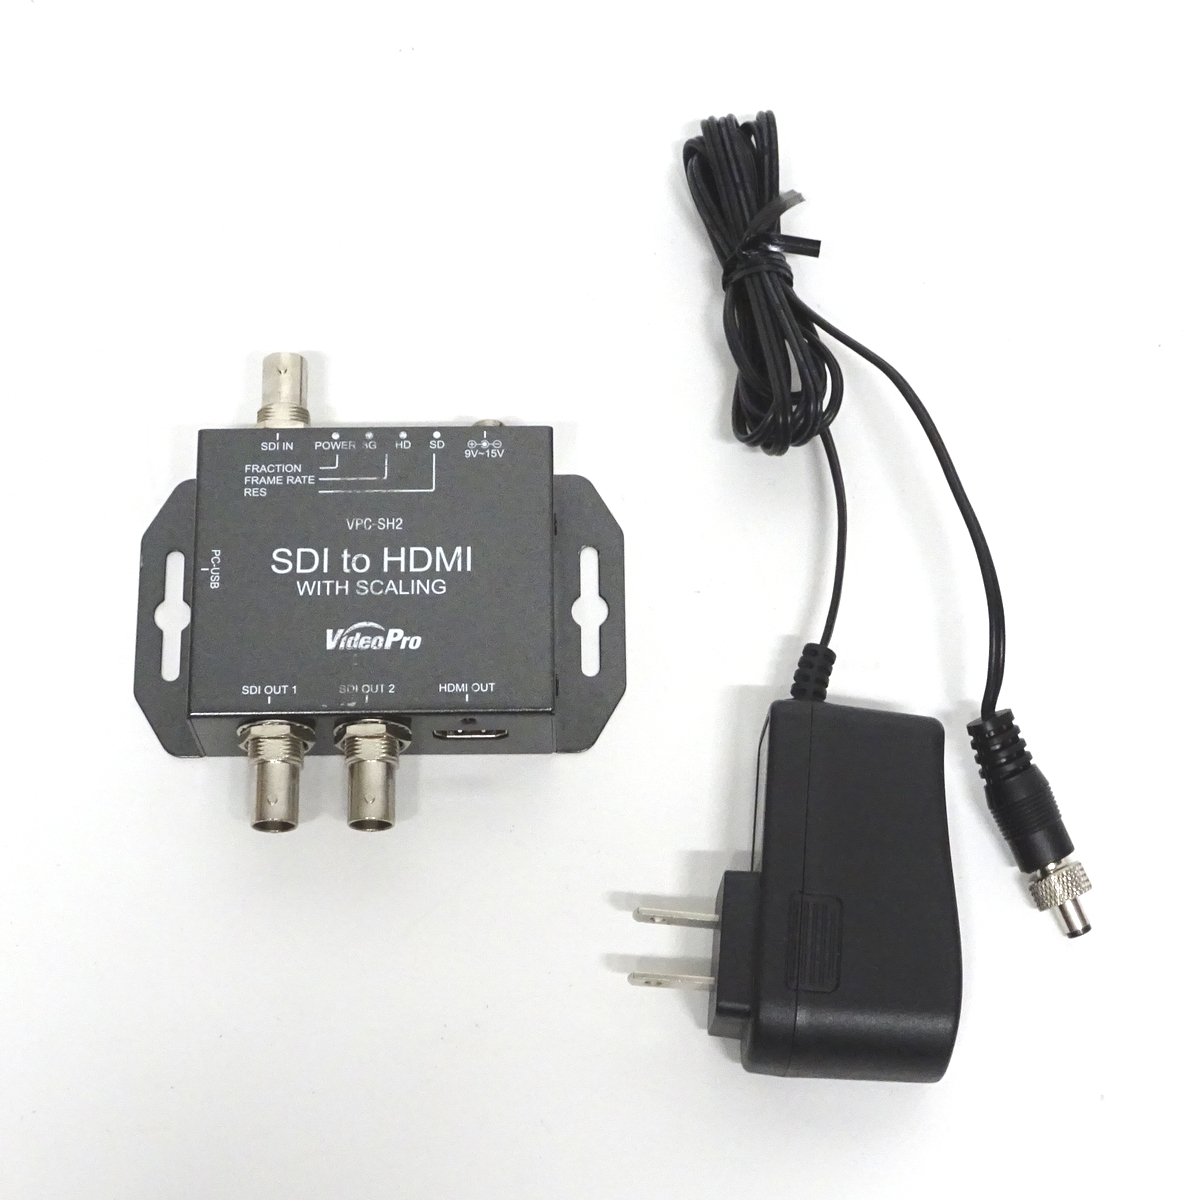 口コミ店 MEDIAEDGE VideoPro HDMI to SDIコンバータ (VPC-HS2EA) 変換アダプター・変換プラグ  FONDOBLAKA